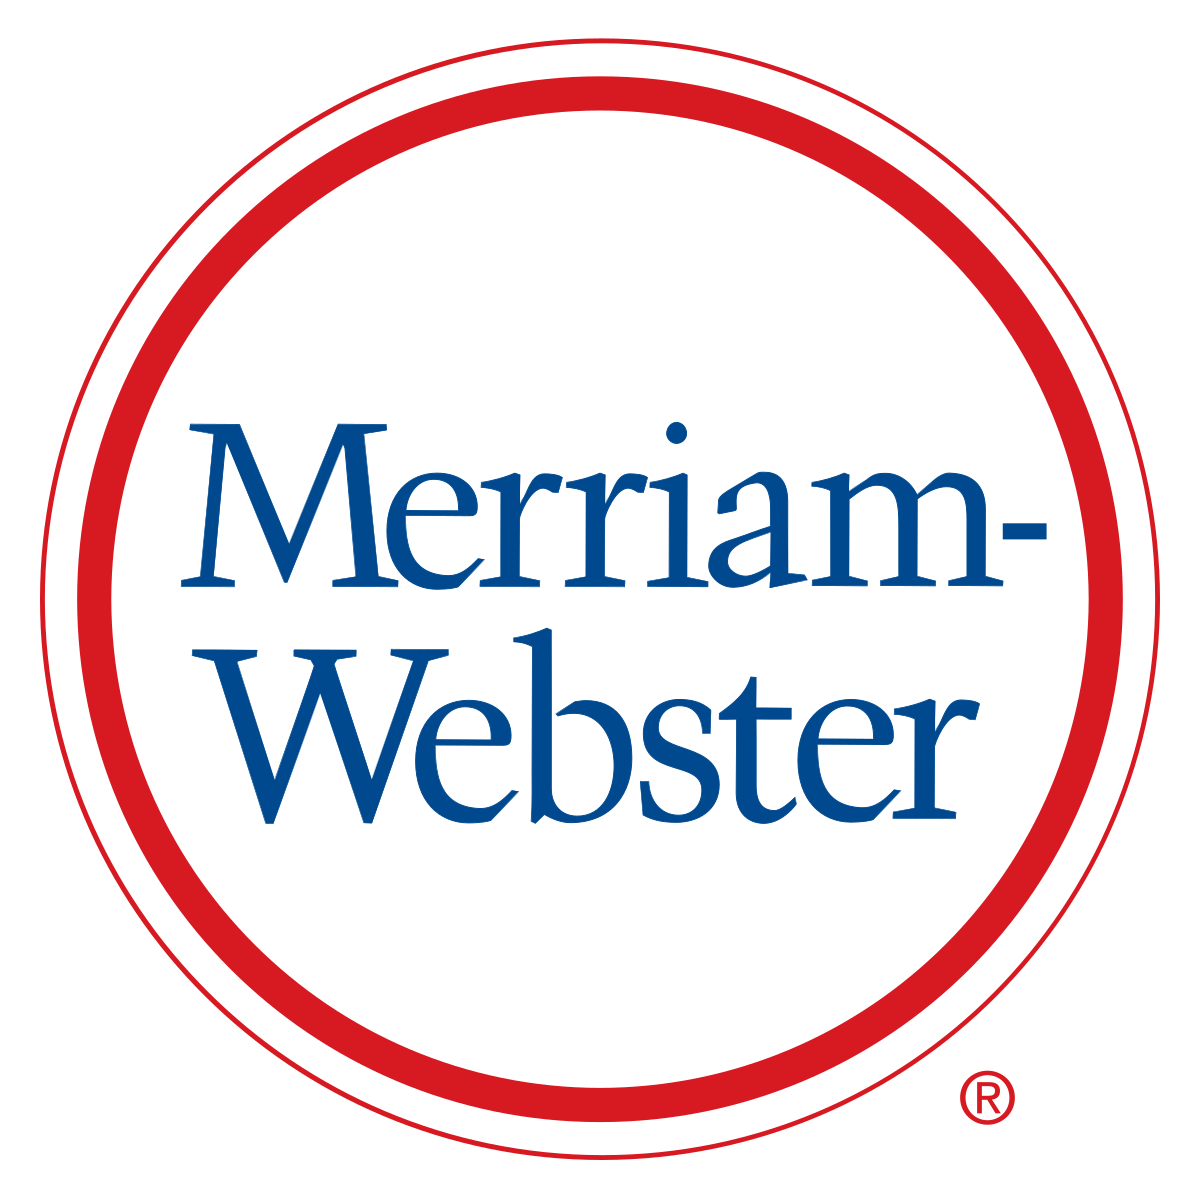 Merriam webster